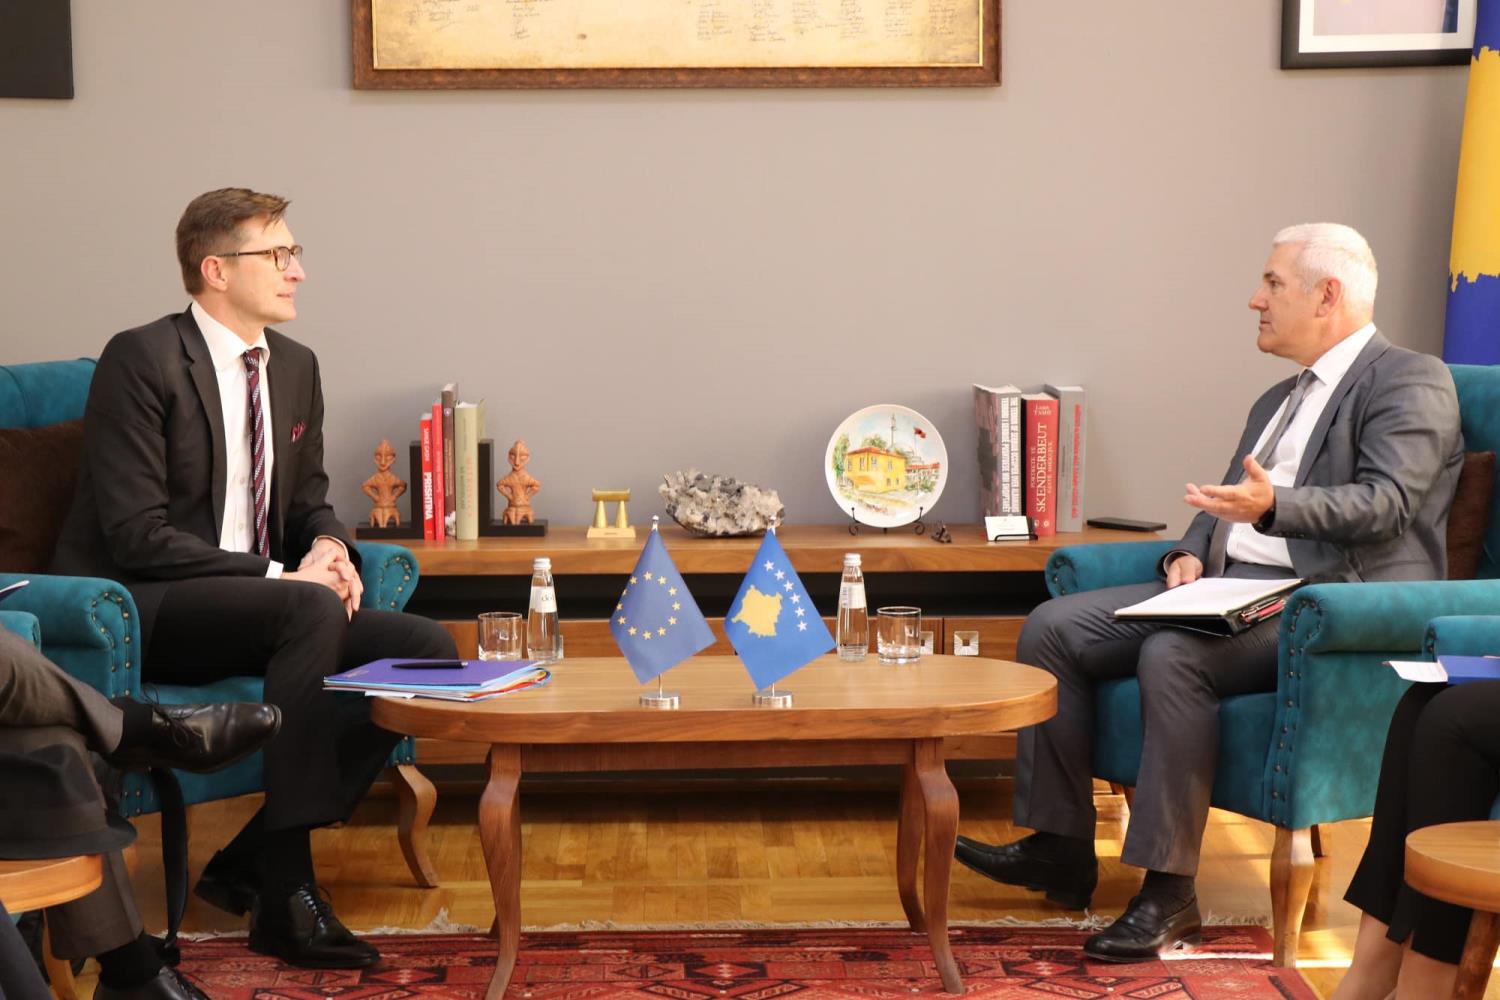 Ministri i Punëve të Brendshme, Xhelal Sveçla, priti në takim zëvendësdrejtorin Menaxhues për Evropë të Shërbimit Evropian të Veprimit të Jashtëm (EEAS) të BE-së, Marko Makovec, ambasadorin e BE-së në Kosovë Thomas Szunyog.